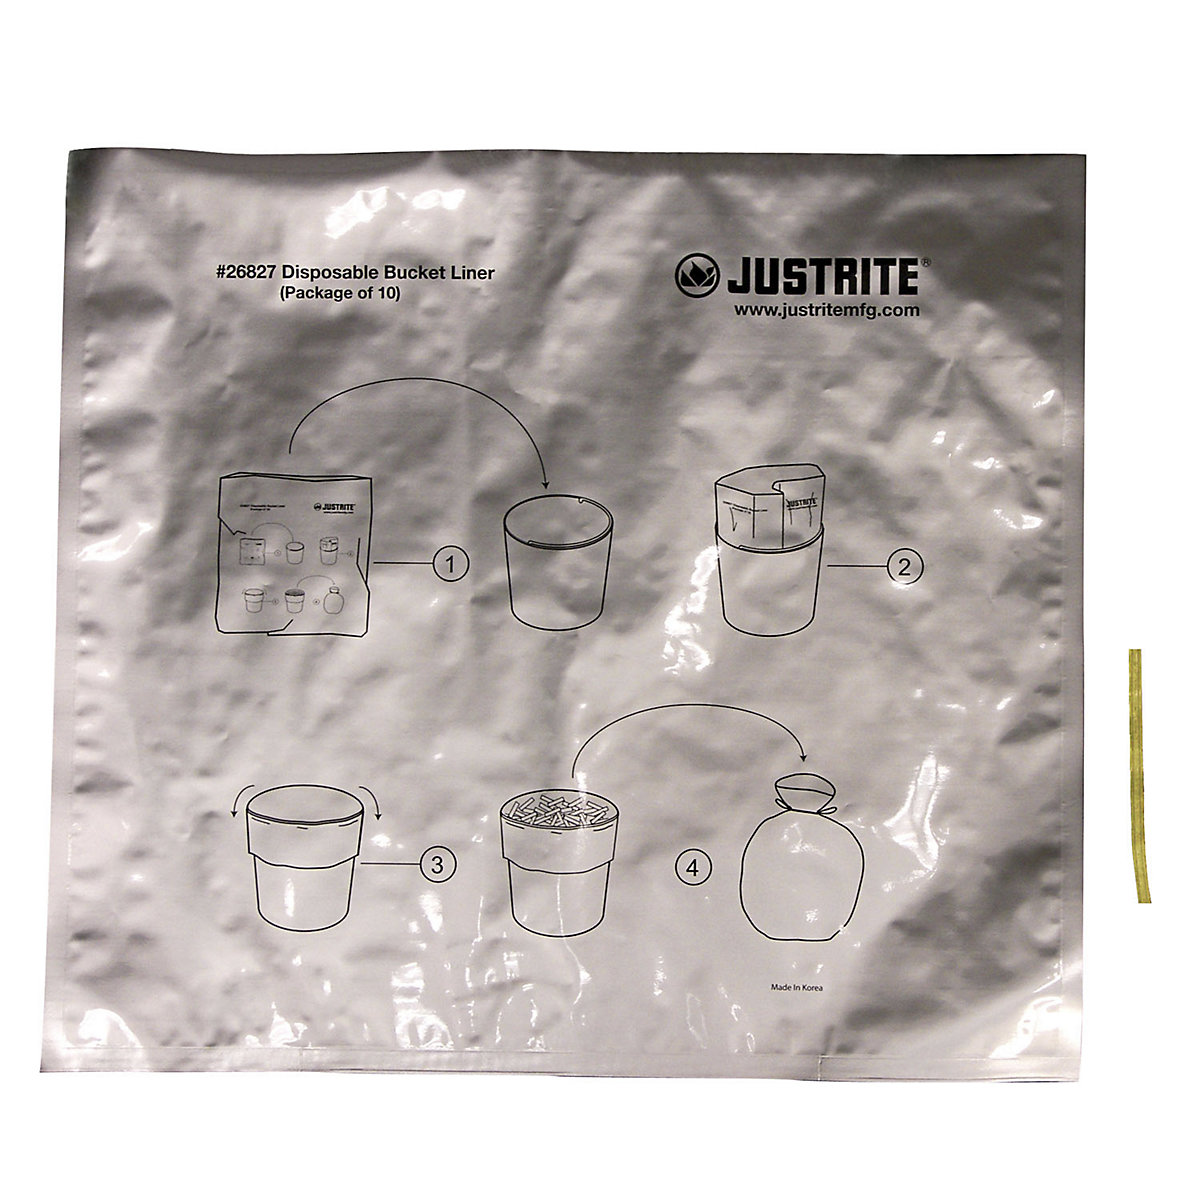 Speciális alumínium hulladékgyűjtő zsákok álló hamutartókhoz - Justrite